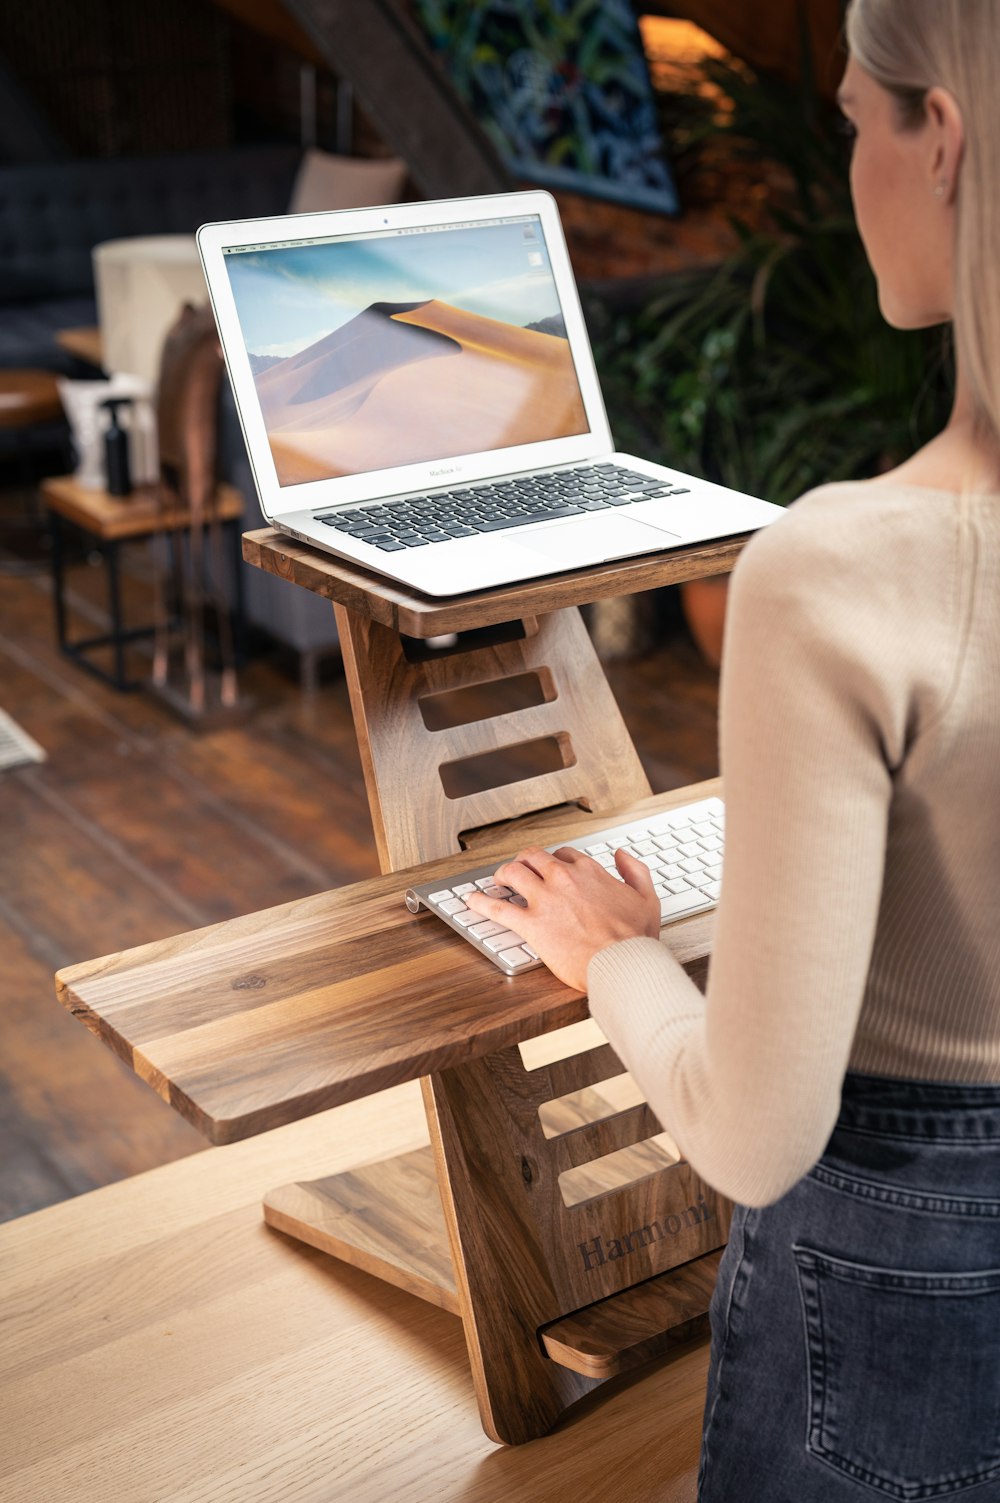 白い長袖シャツを着た女性が茶色の木製の椅子に座り、MacBook Airを使っている